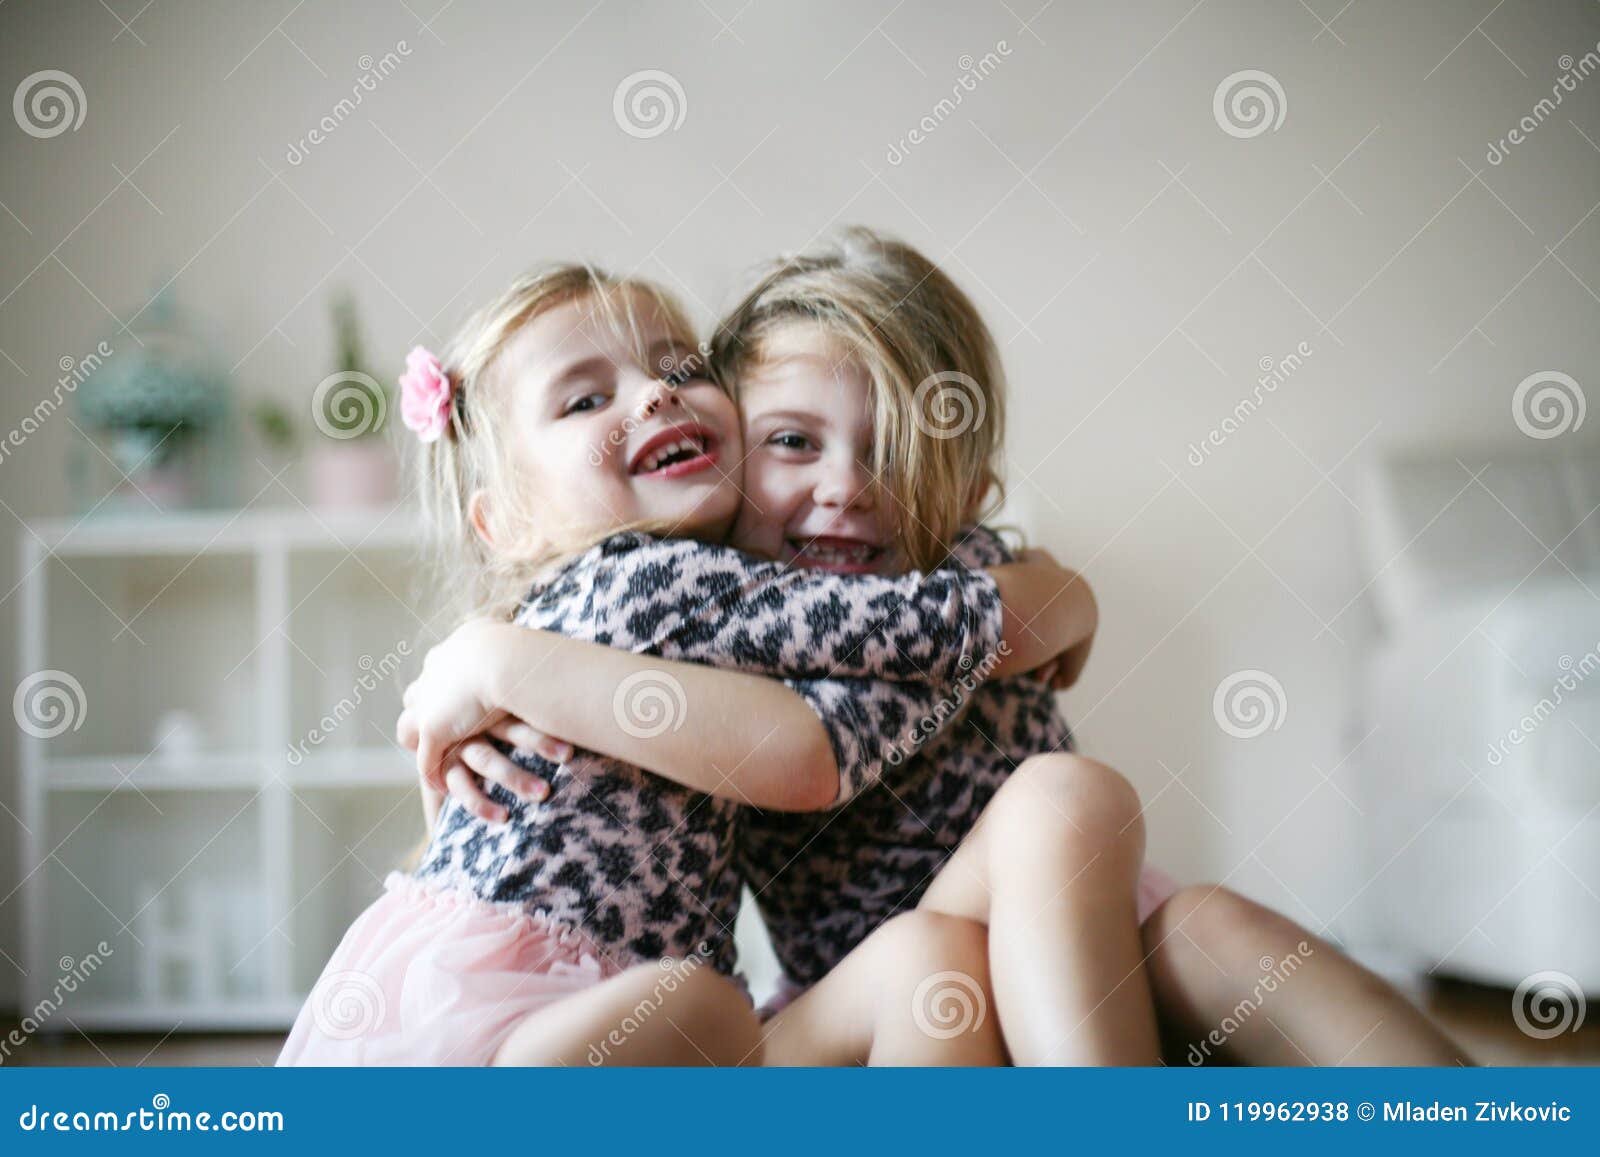 获得两个的女孩拥抱和乐趣 库存图片. 图片 包括有 真诚, 友谊, 酿酒厂, 生活方式, 查找, 样式, 快乐 - 83555261